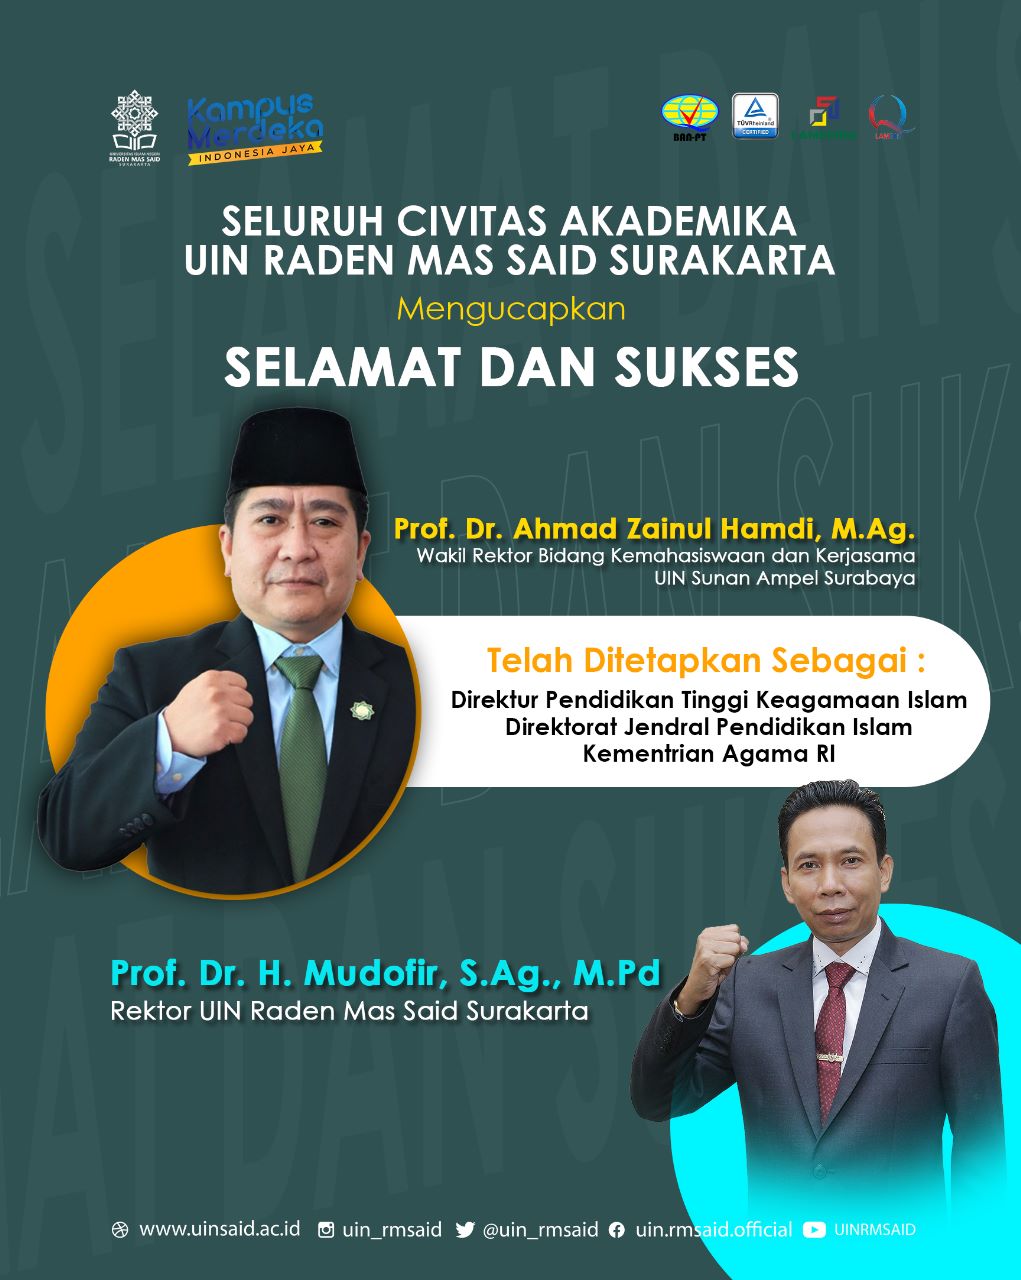 Selamat dan Sukses Atas Dilantiknya Prof. Dr. Ahmad Zainul Hamdi, M. Ag Sebagai Direktur Pendidikan Tinggi Keagamaan Islam Pada Direktorat Jenderal Pendidikan Islam Kemenag RI